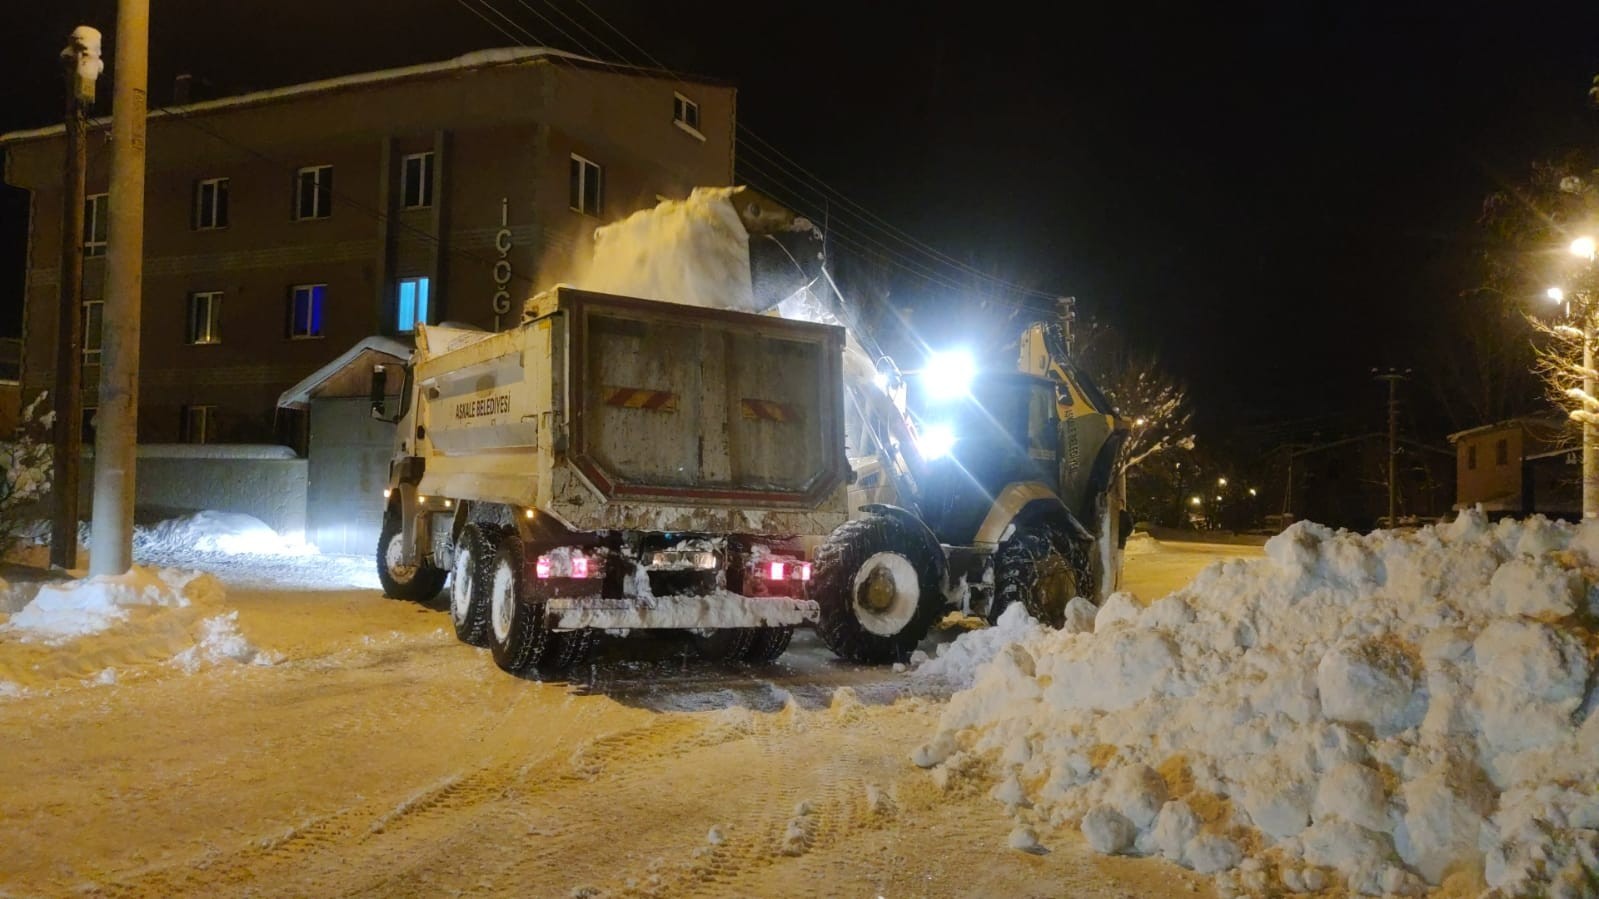 Belediye ekiplerinin gece kar mesaisi